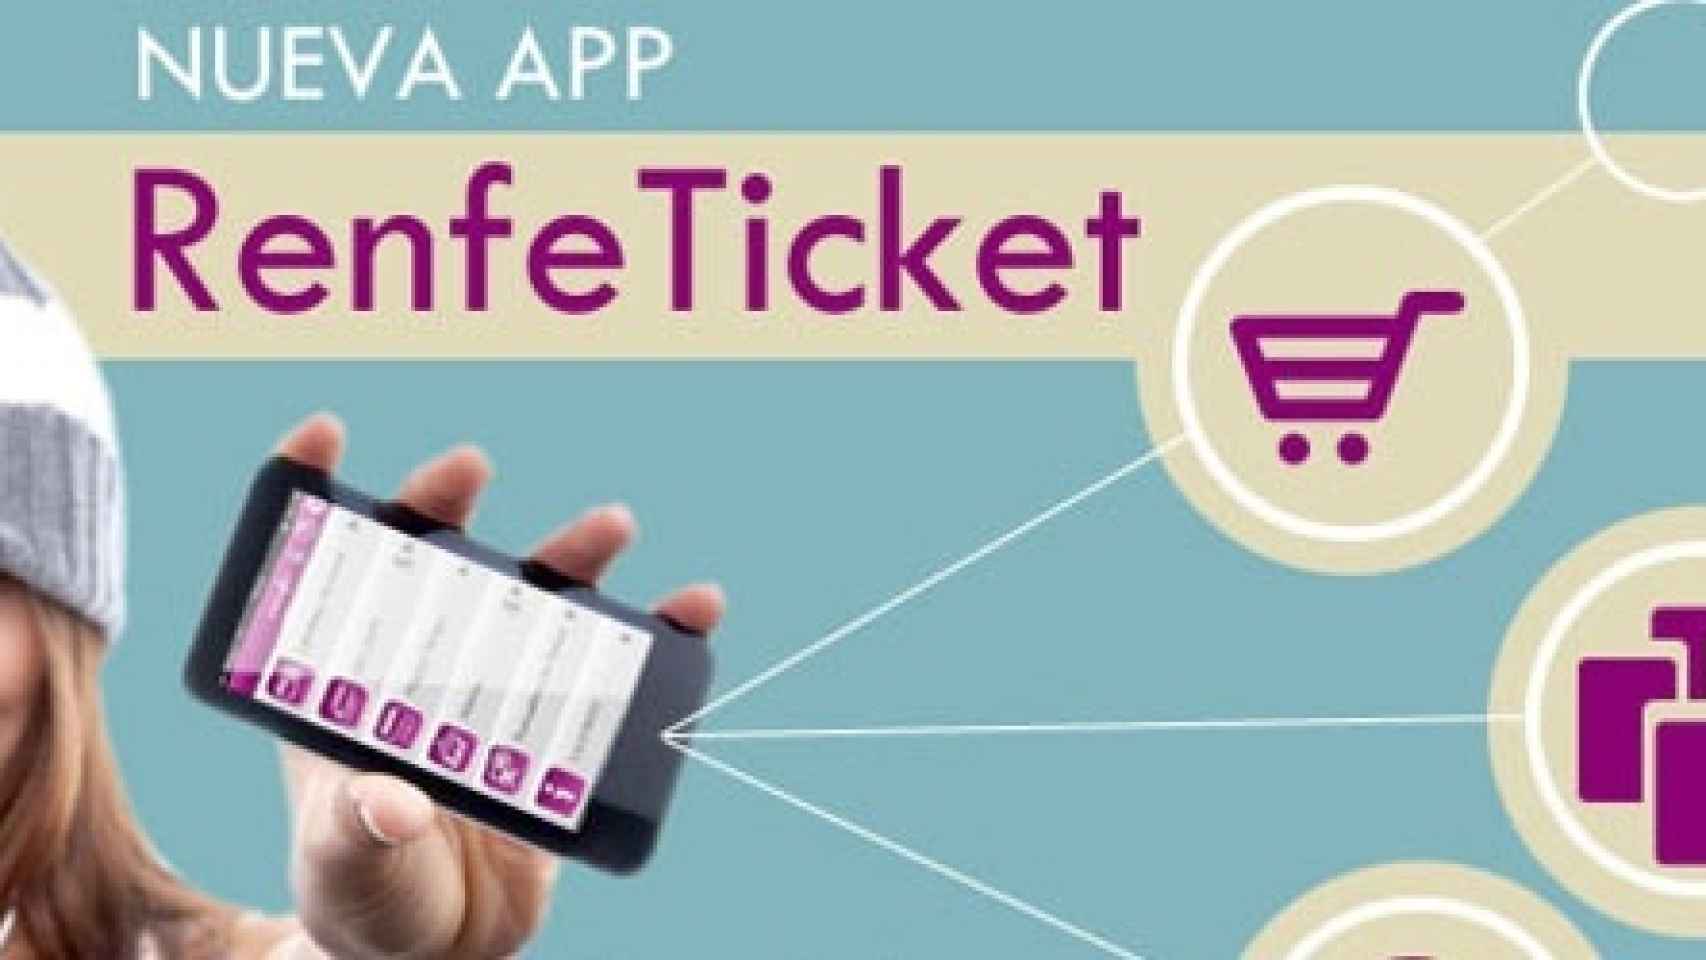 RenfeTicket, la aplicación oficial de Renfe gestiona tus billetes de tren desde tu móvil